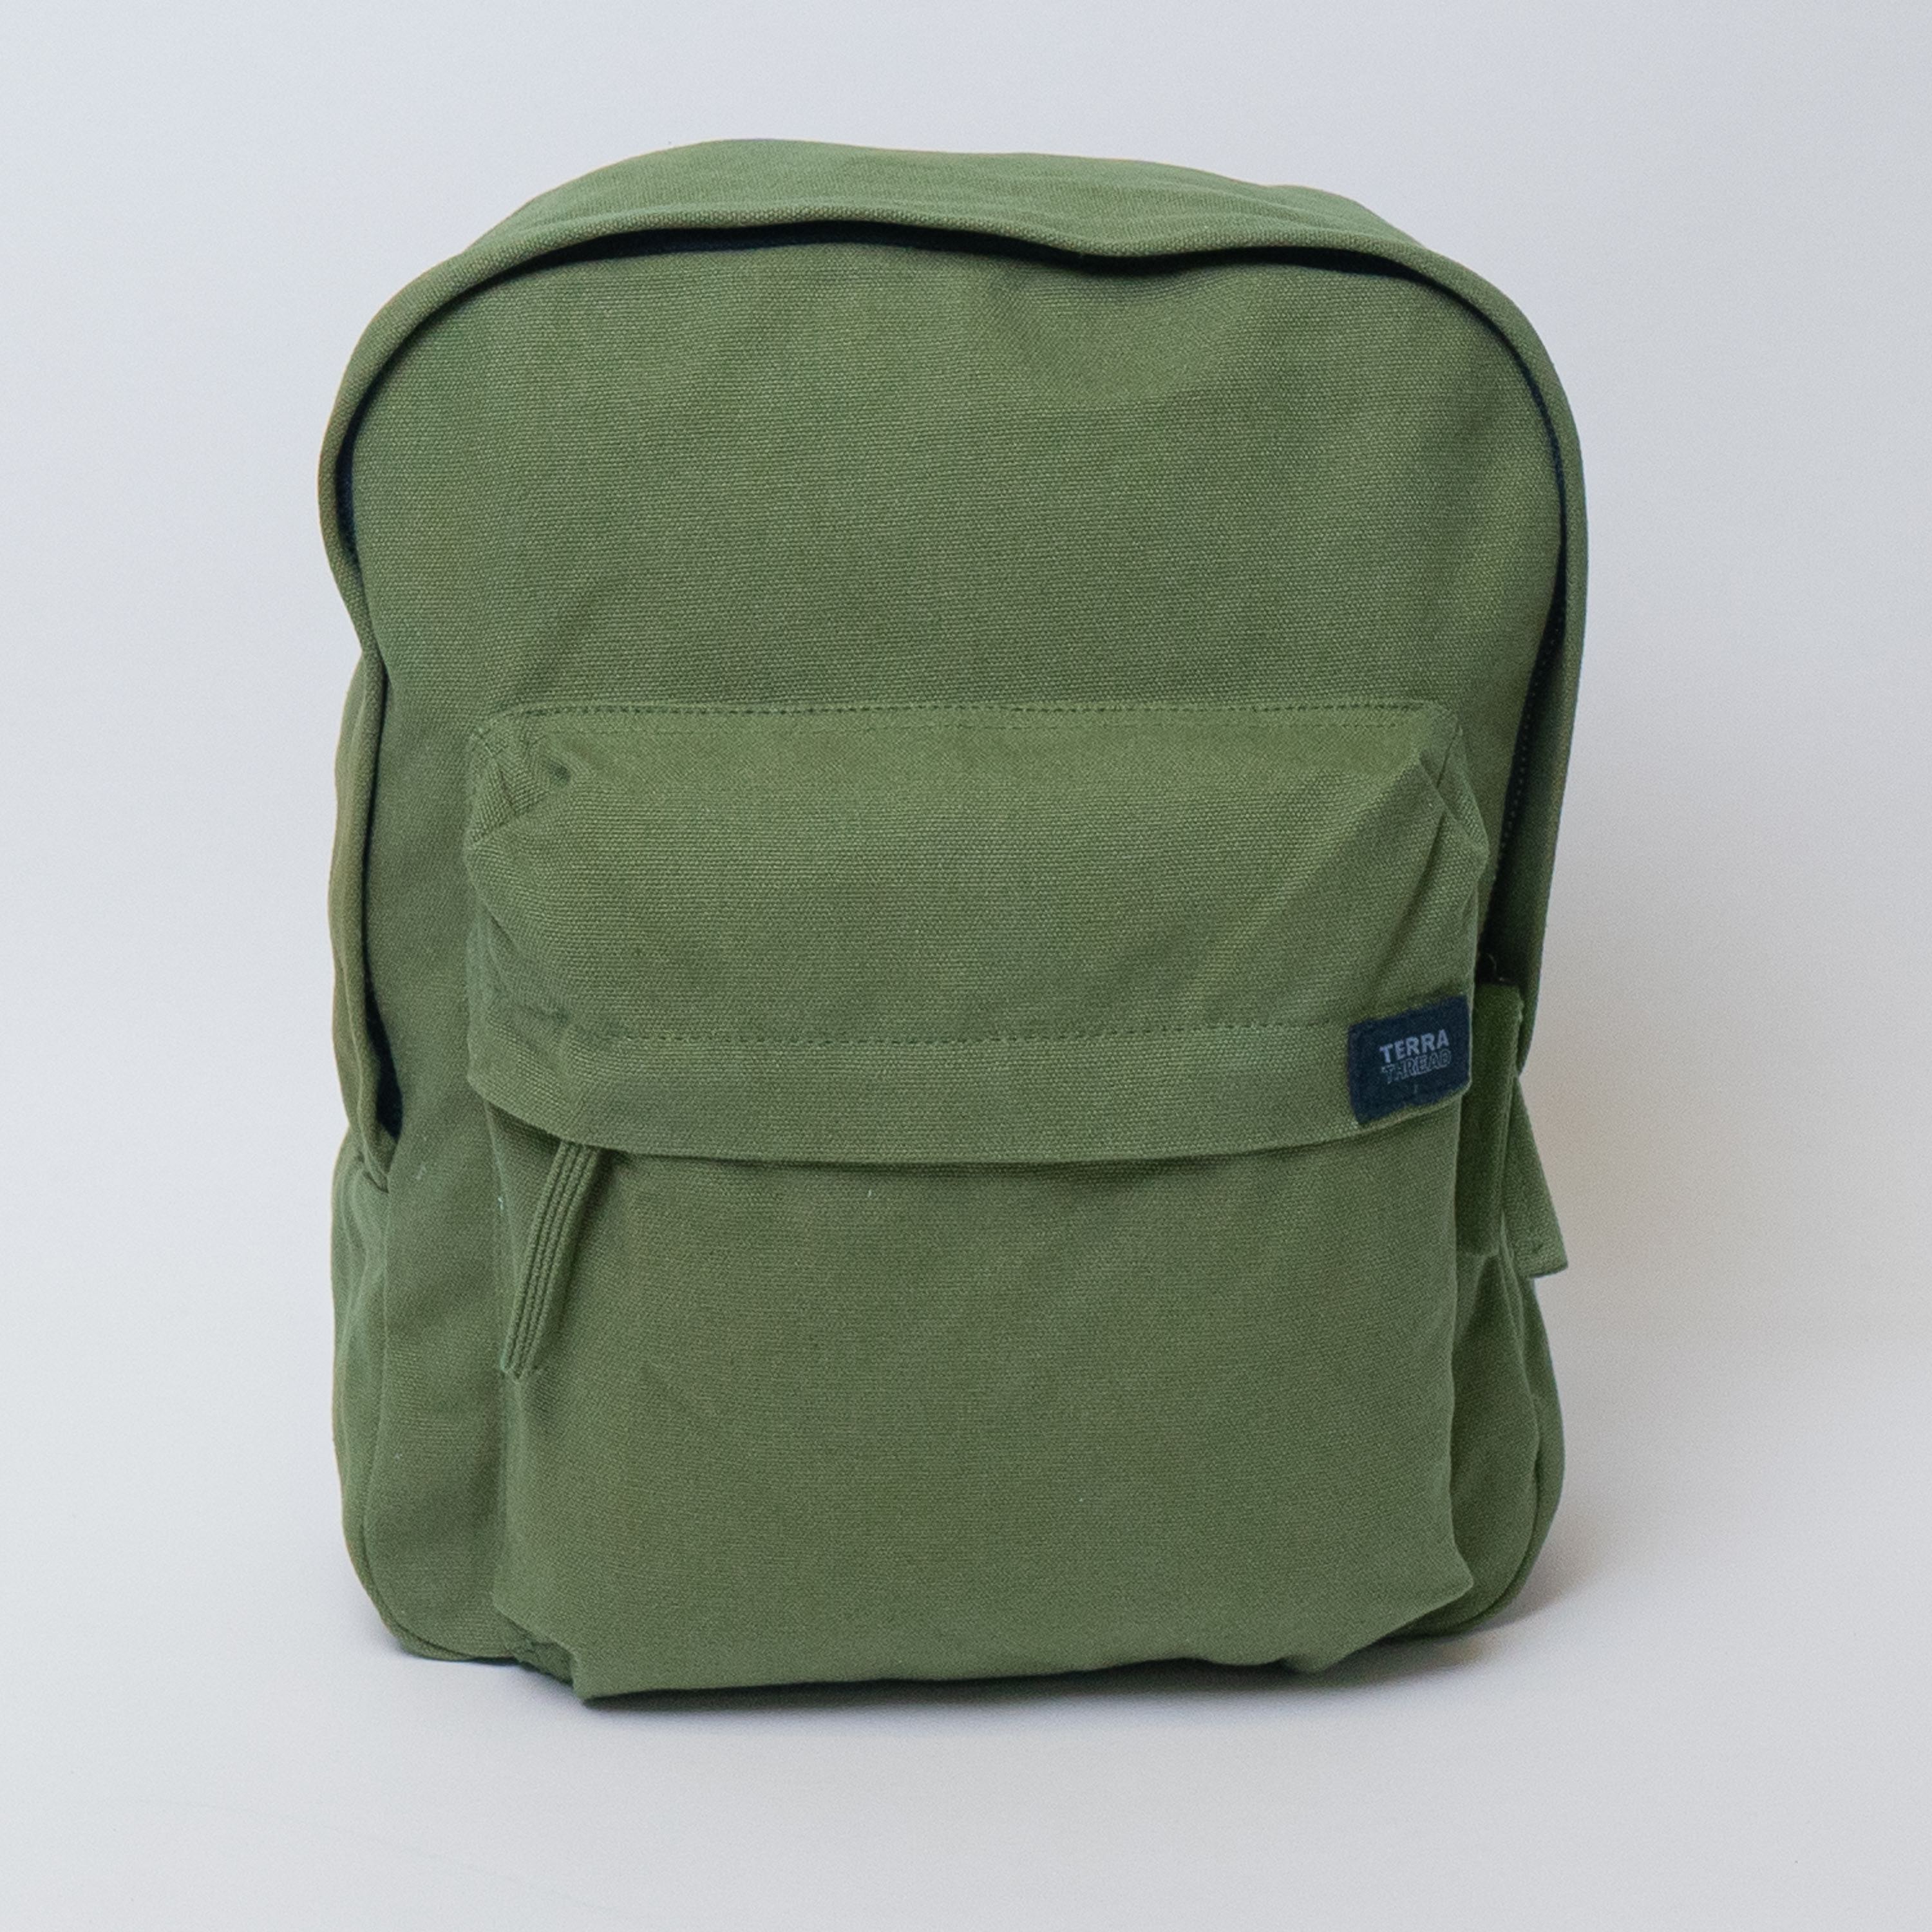 olive green mini backpack